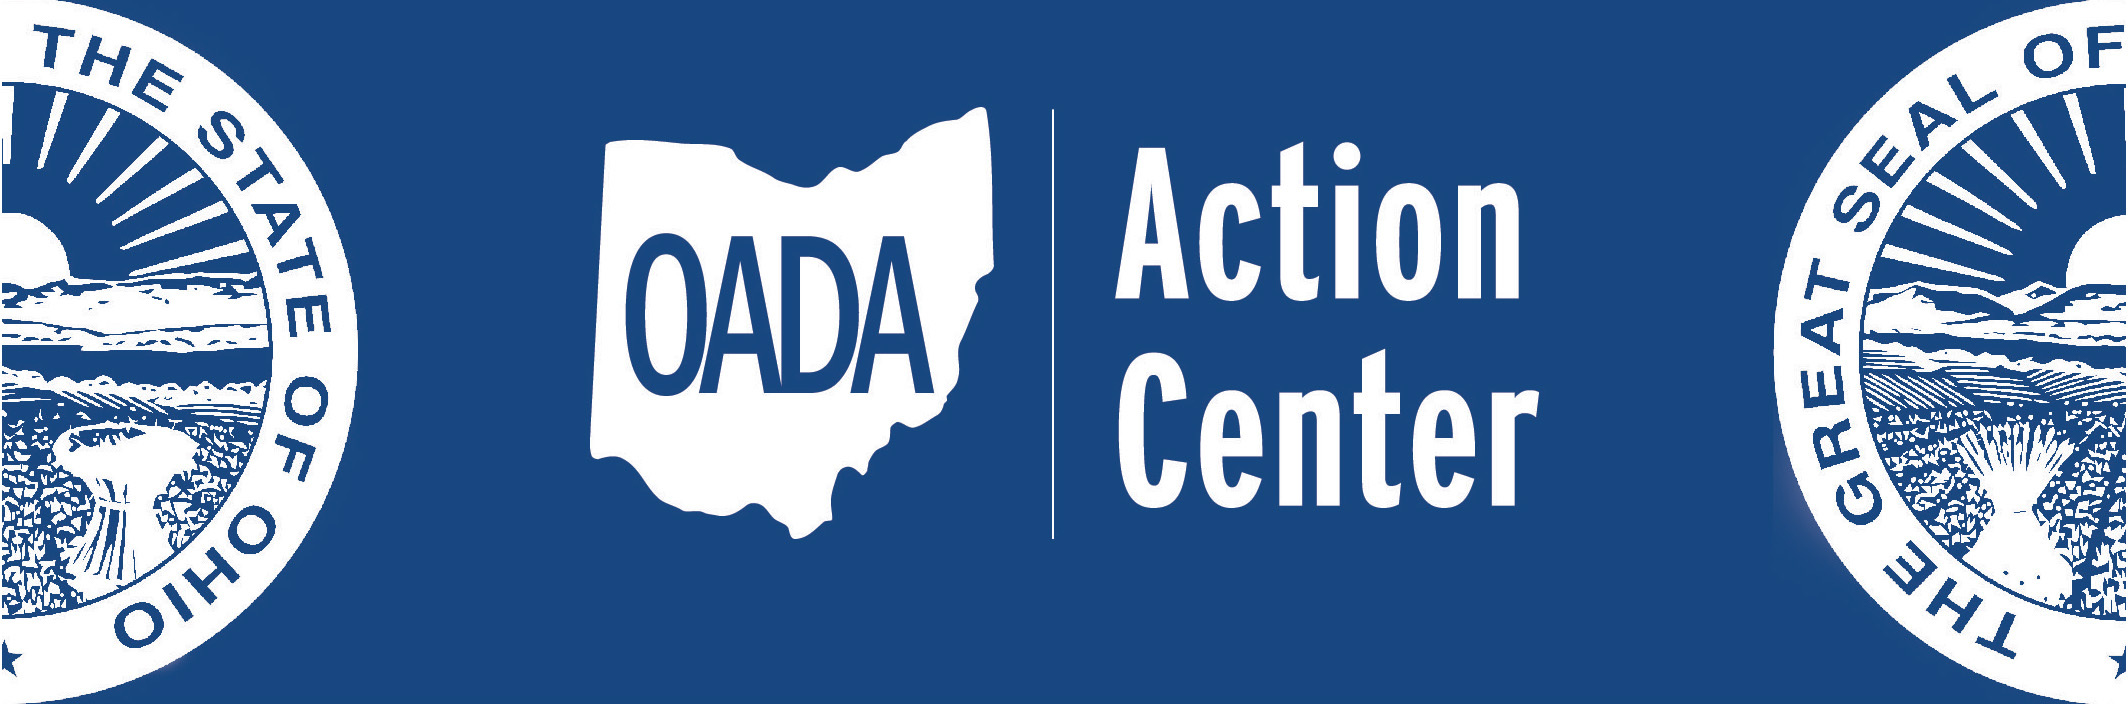 Action Center Logo 002